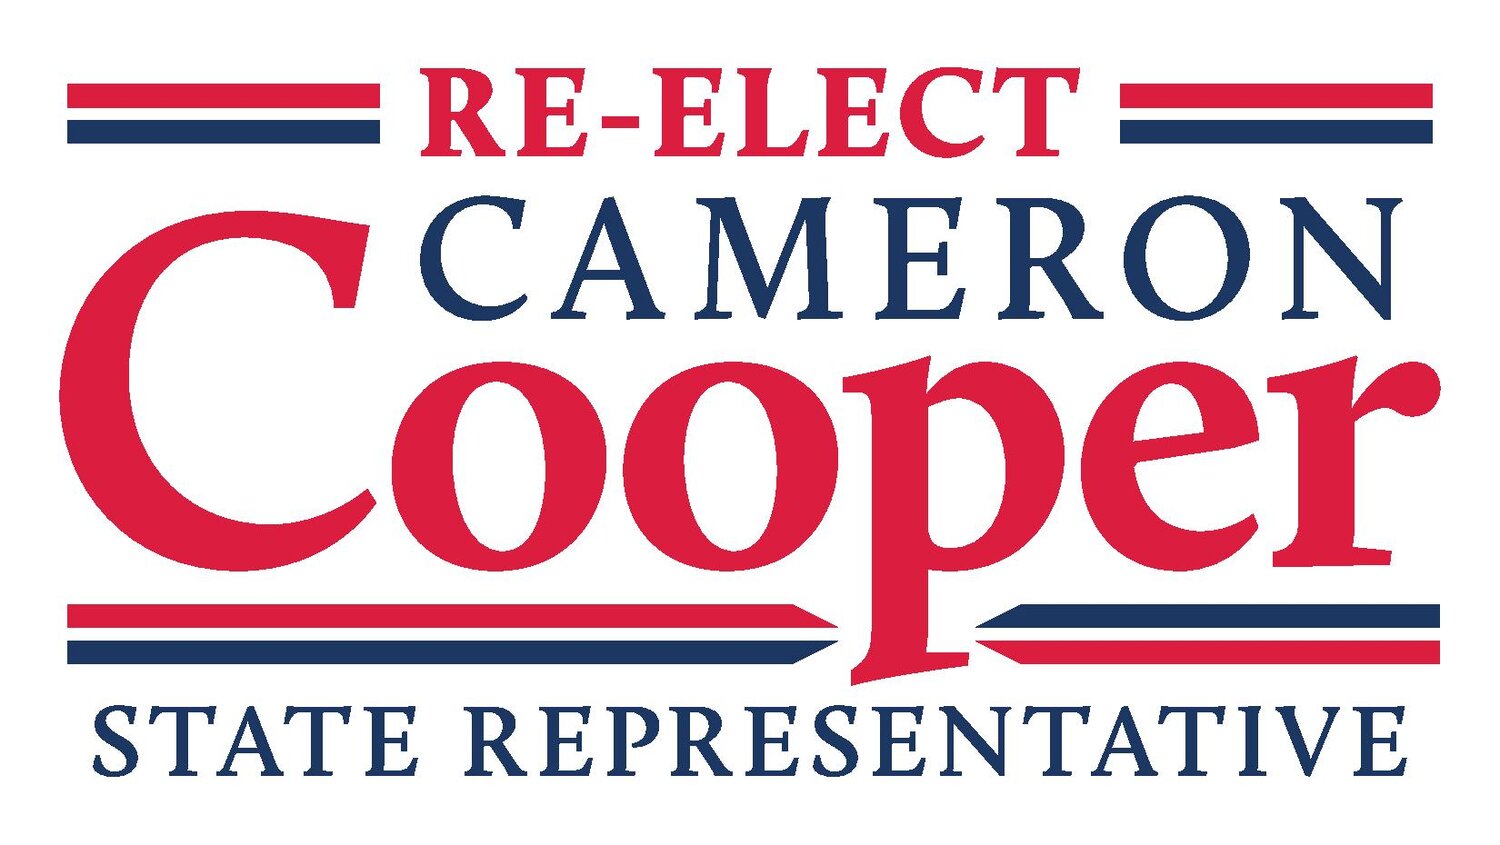 Cameron Cooper for State Representative